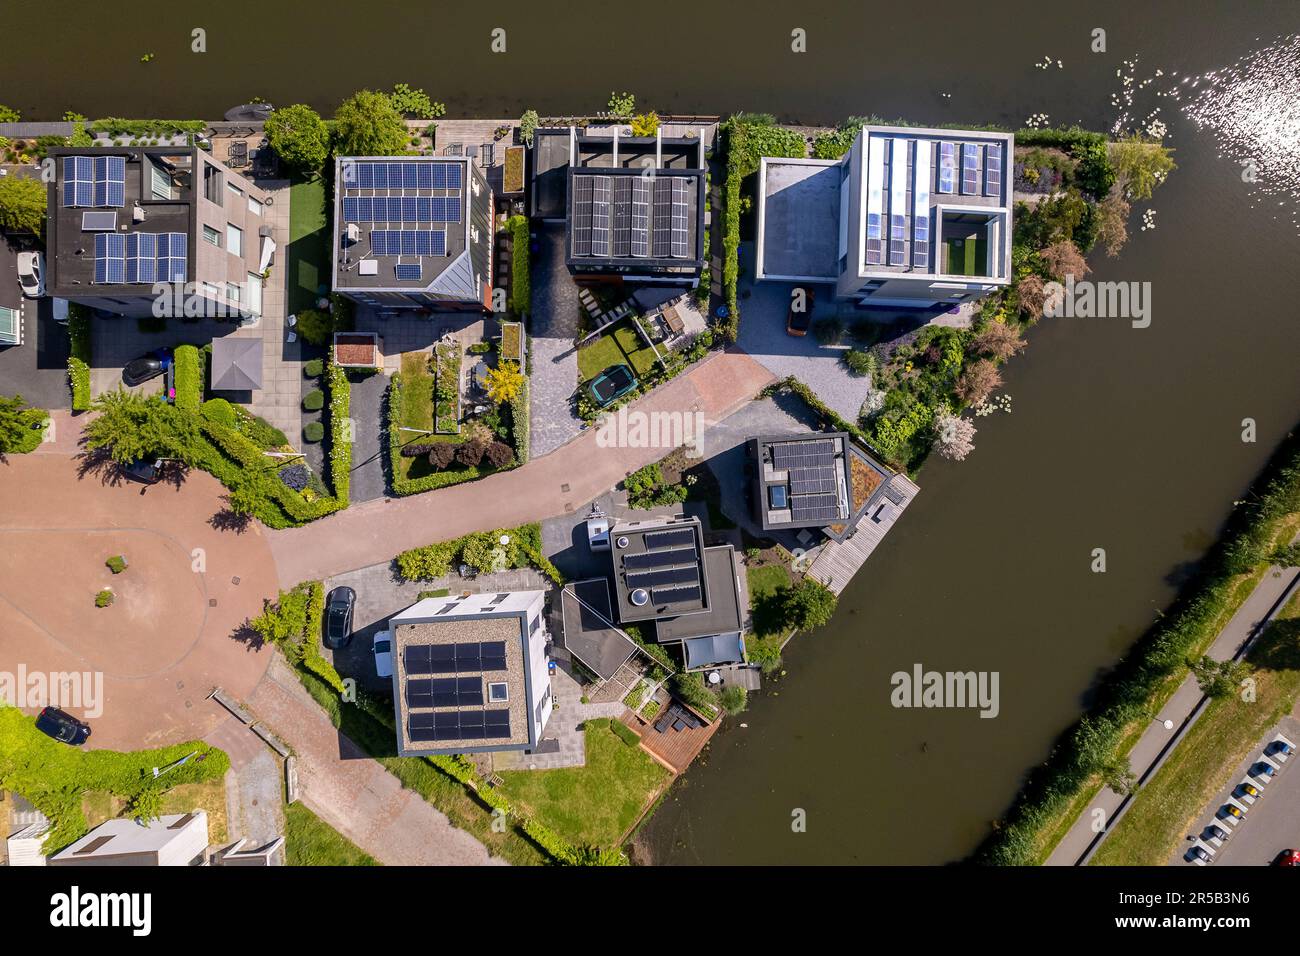 Vista aerea della zona residenziale nel quartiere di Leidsche Rijn a Utrecht, Paesi Bassi Foto Stock